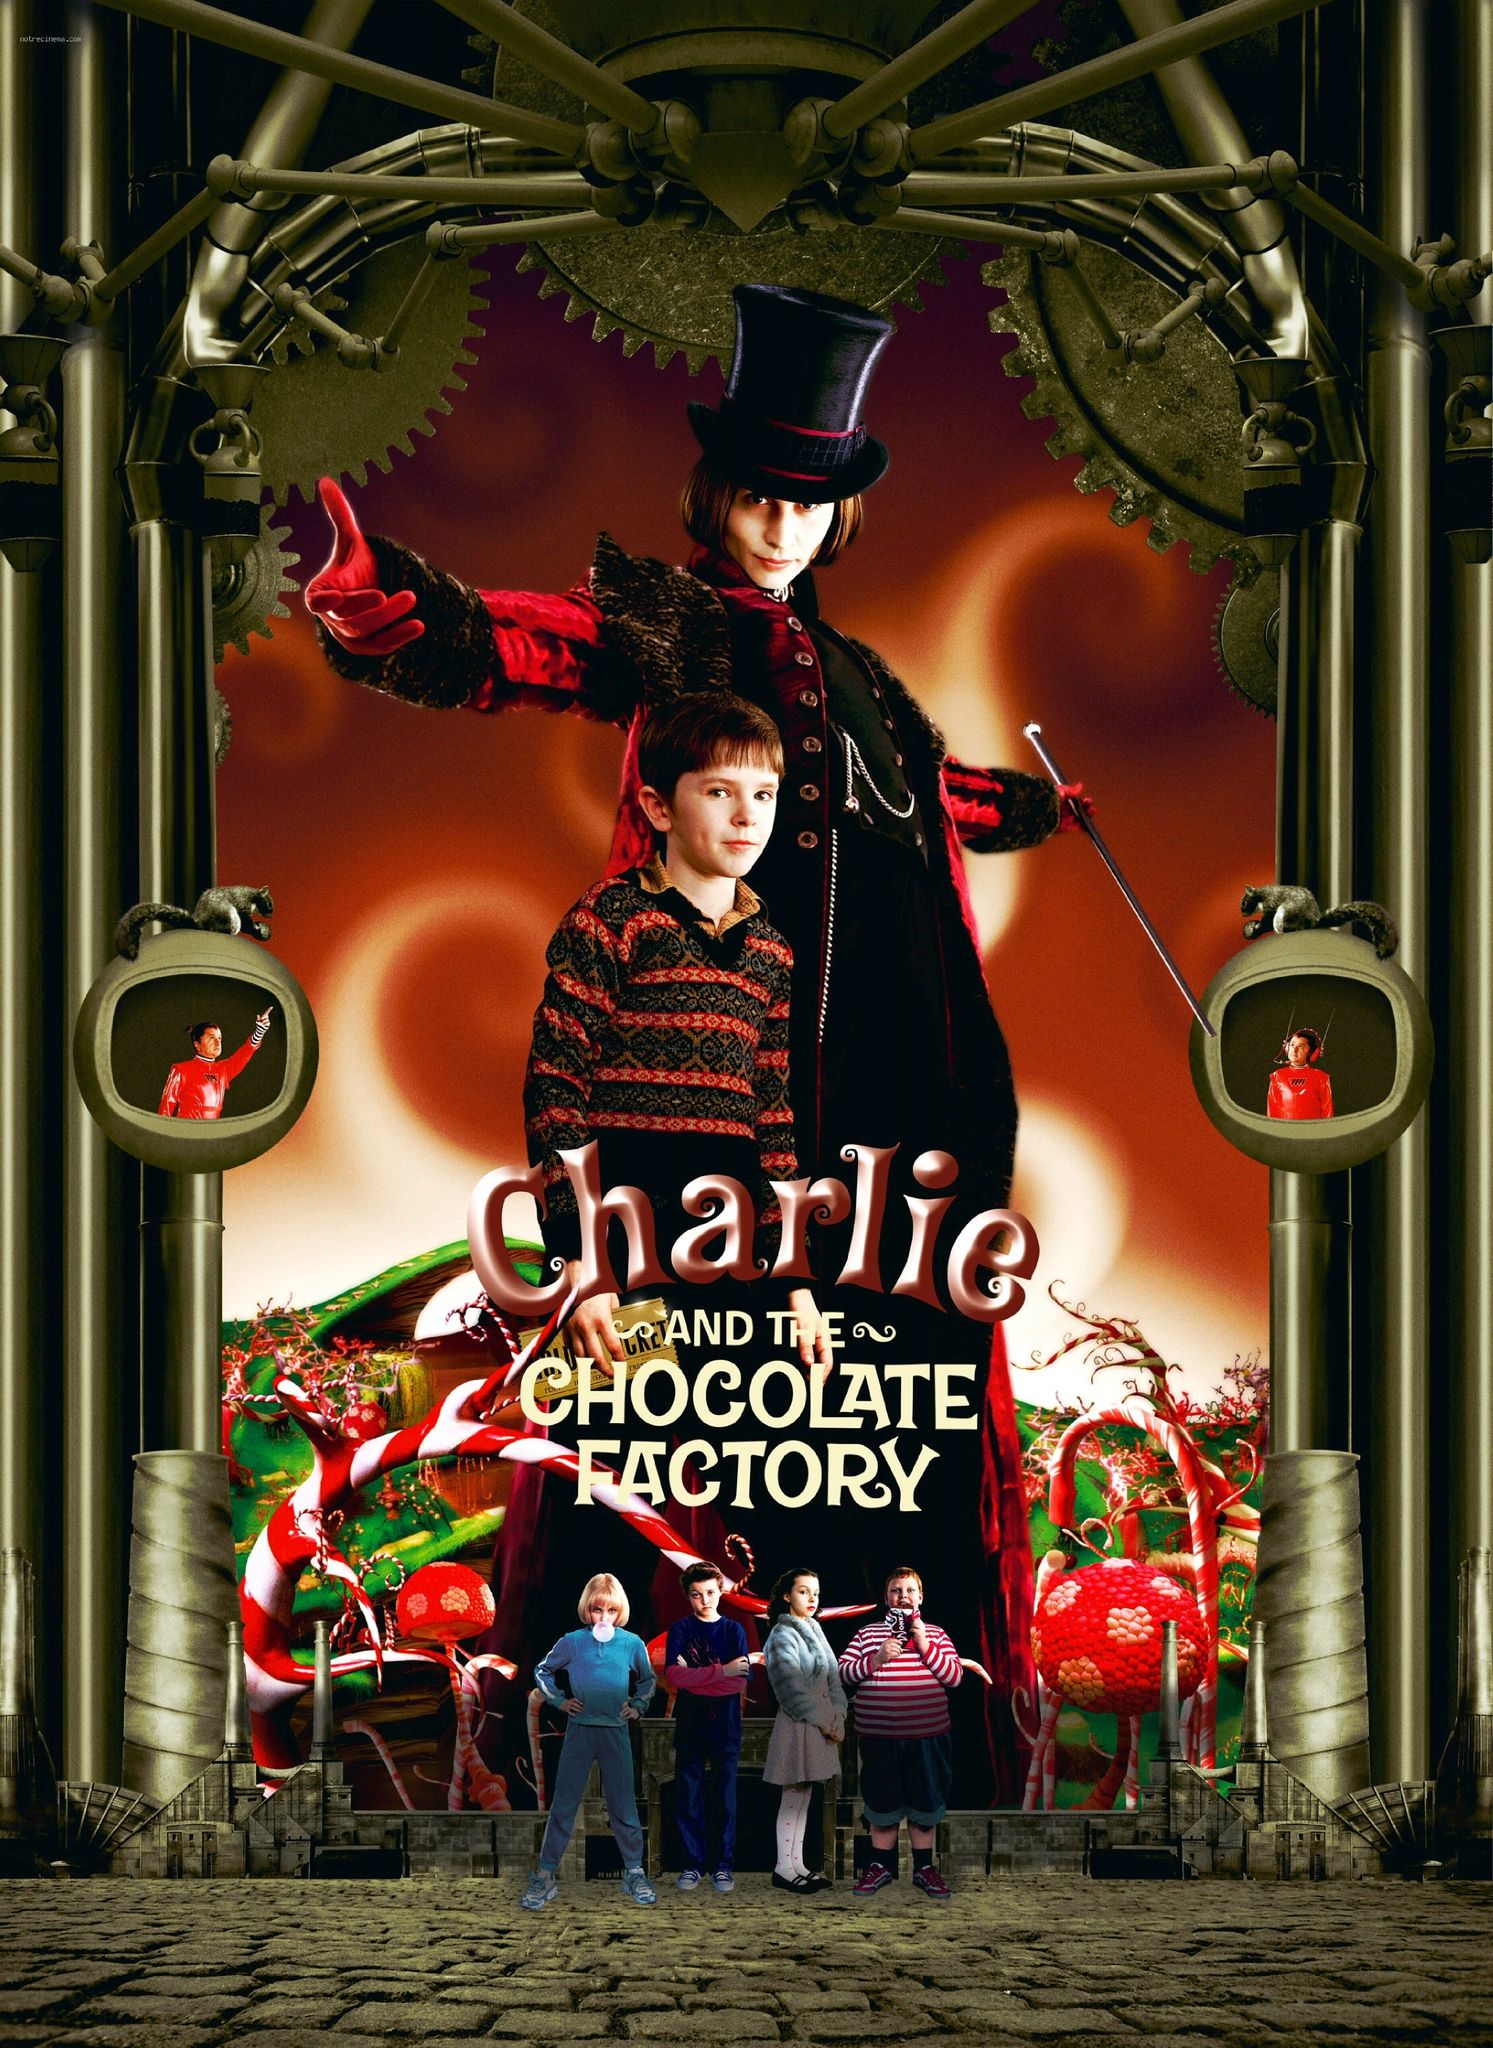 Charlie et la chocolaterie - film 2005 - AlloCiné